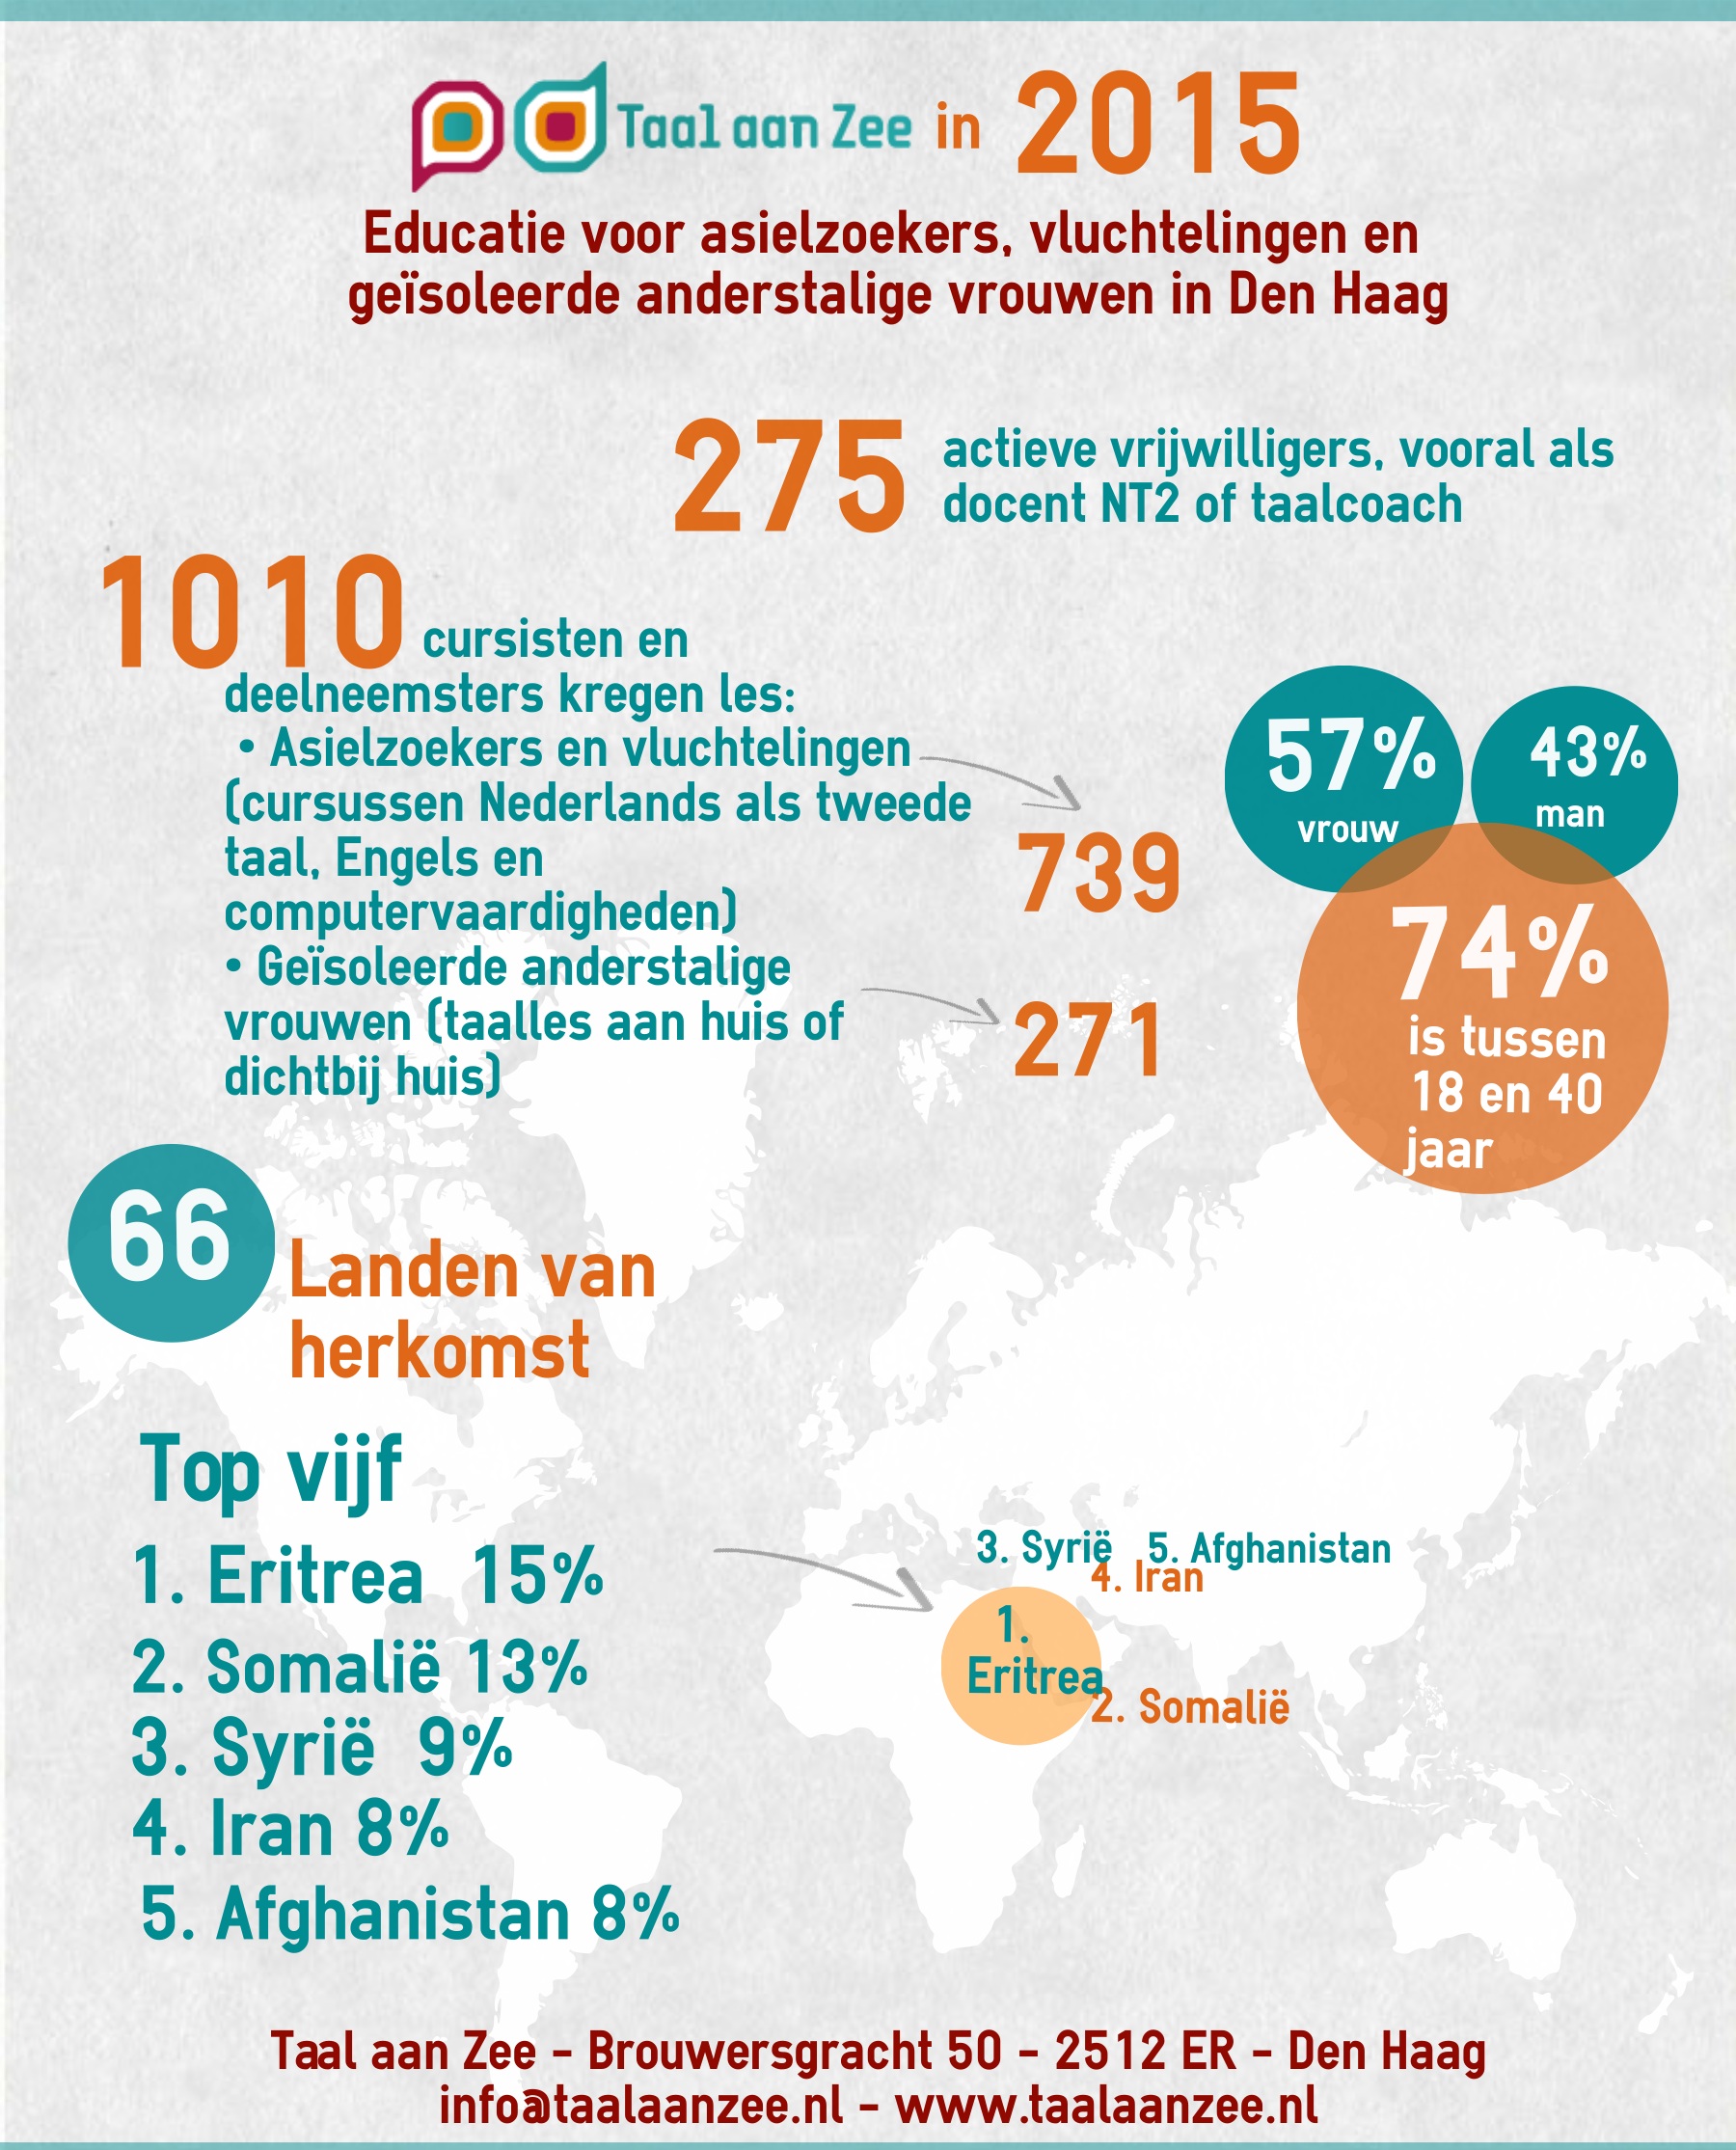 Taal aan Zee in 2015 - Infographic